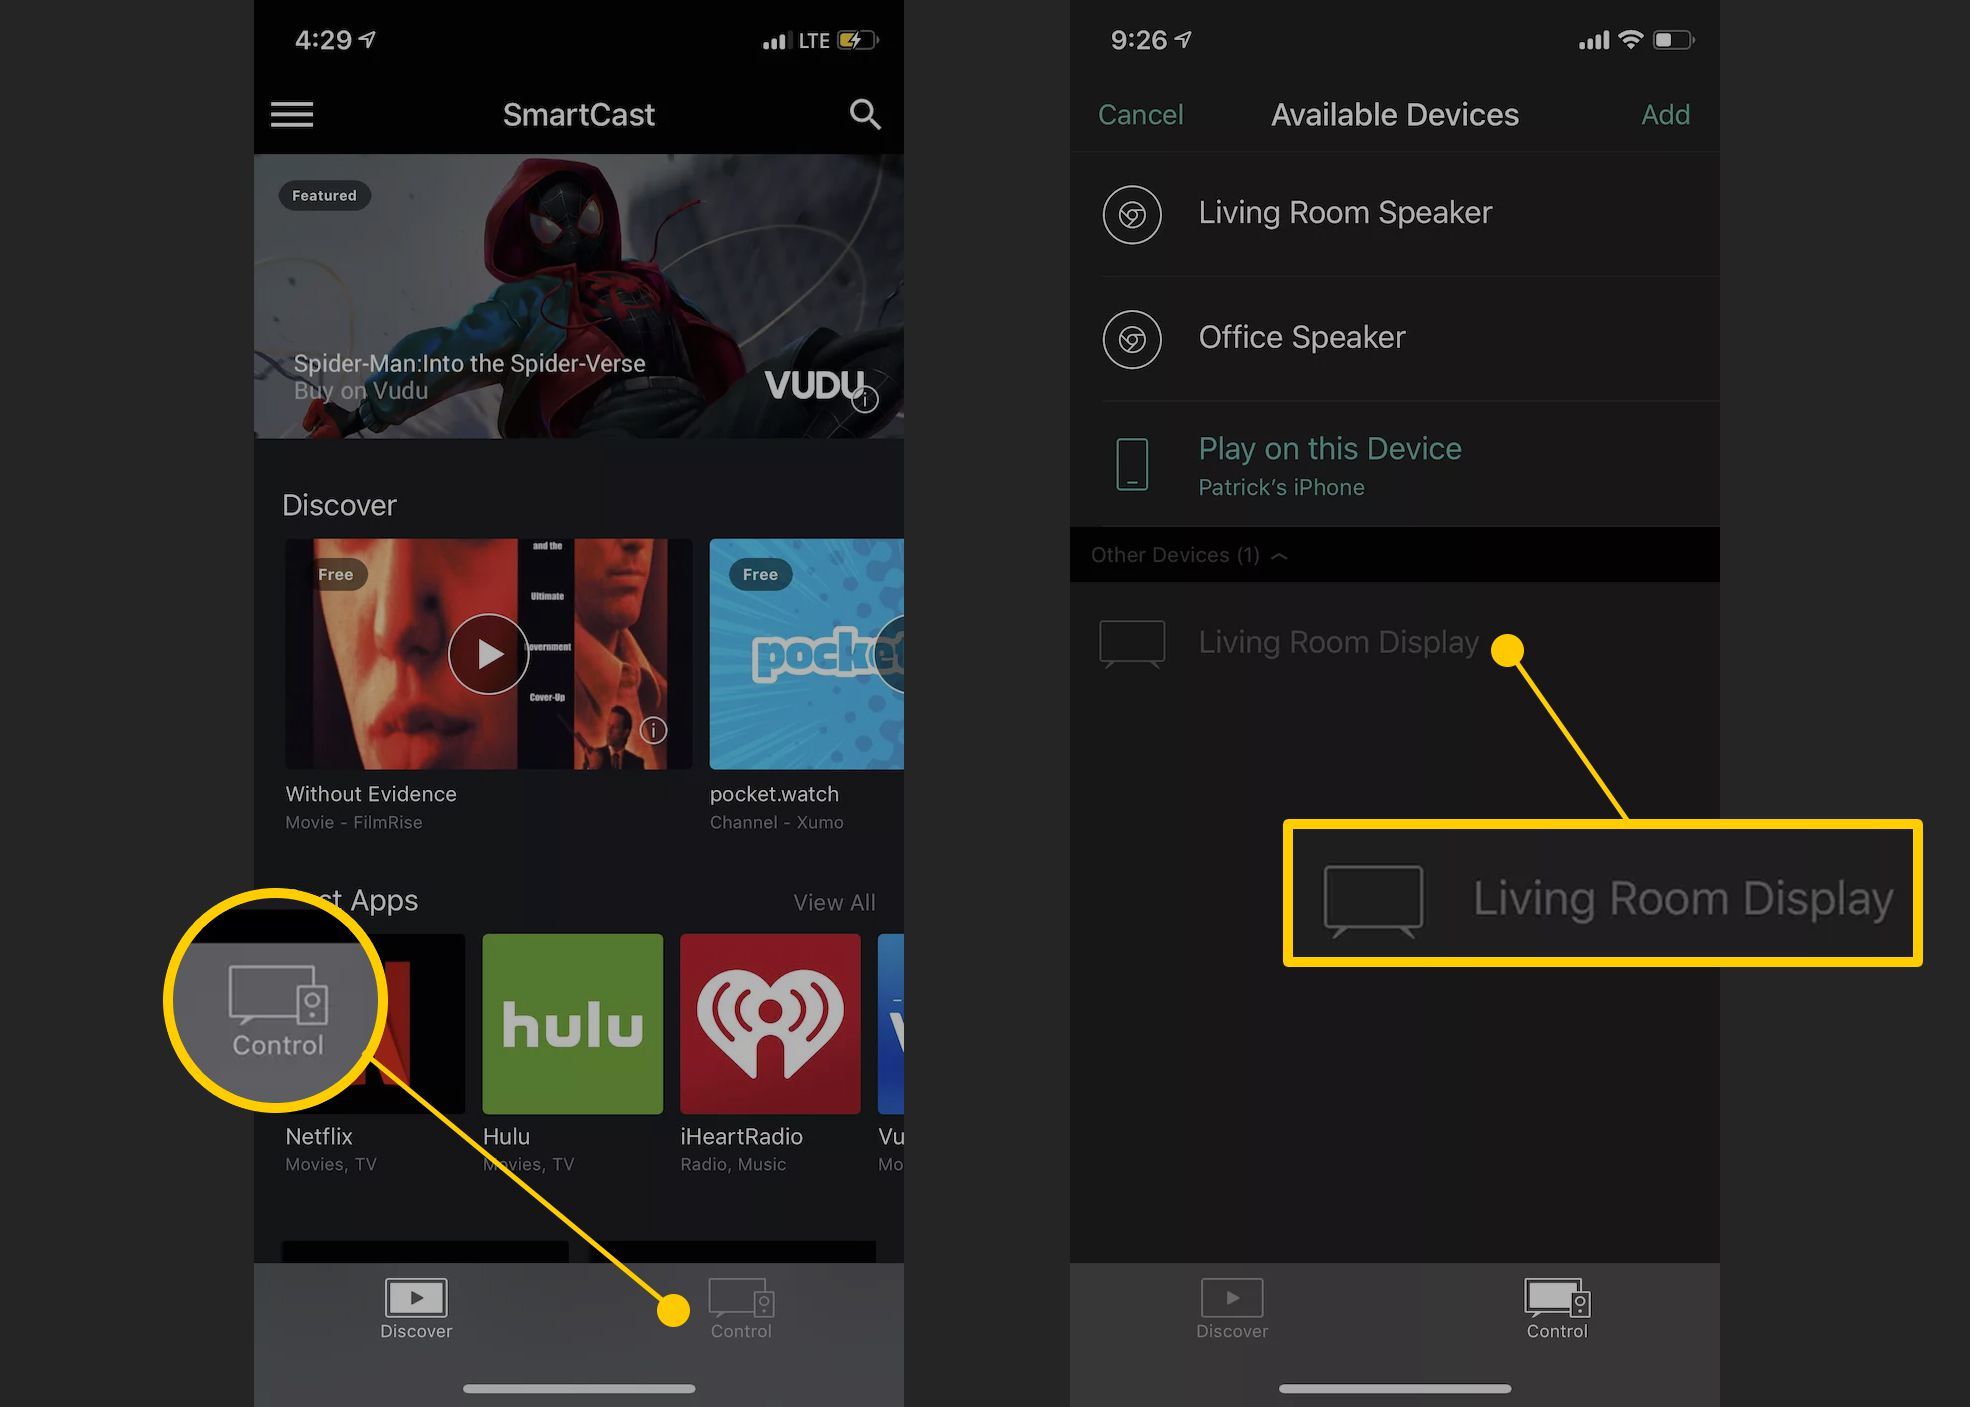 Кнопка управления и ТВ-дисплей для гостиной комнаты в приложении Vizio для iOS